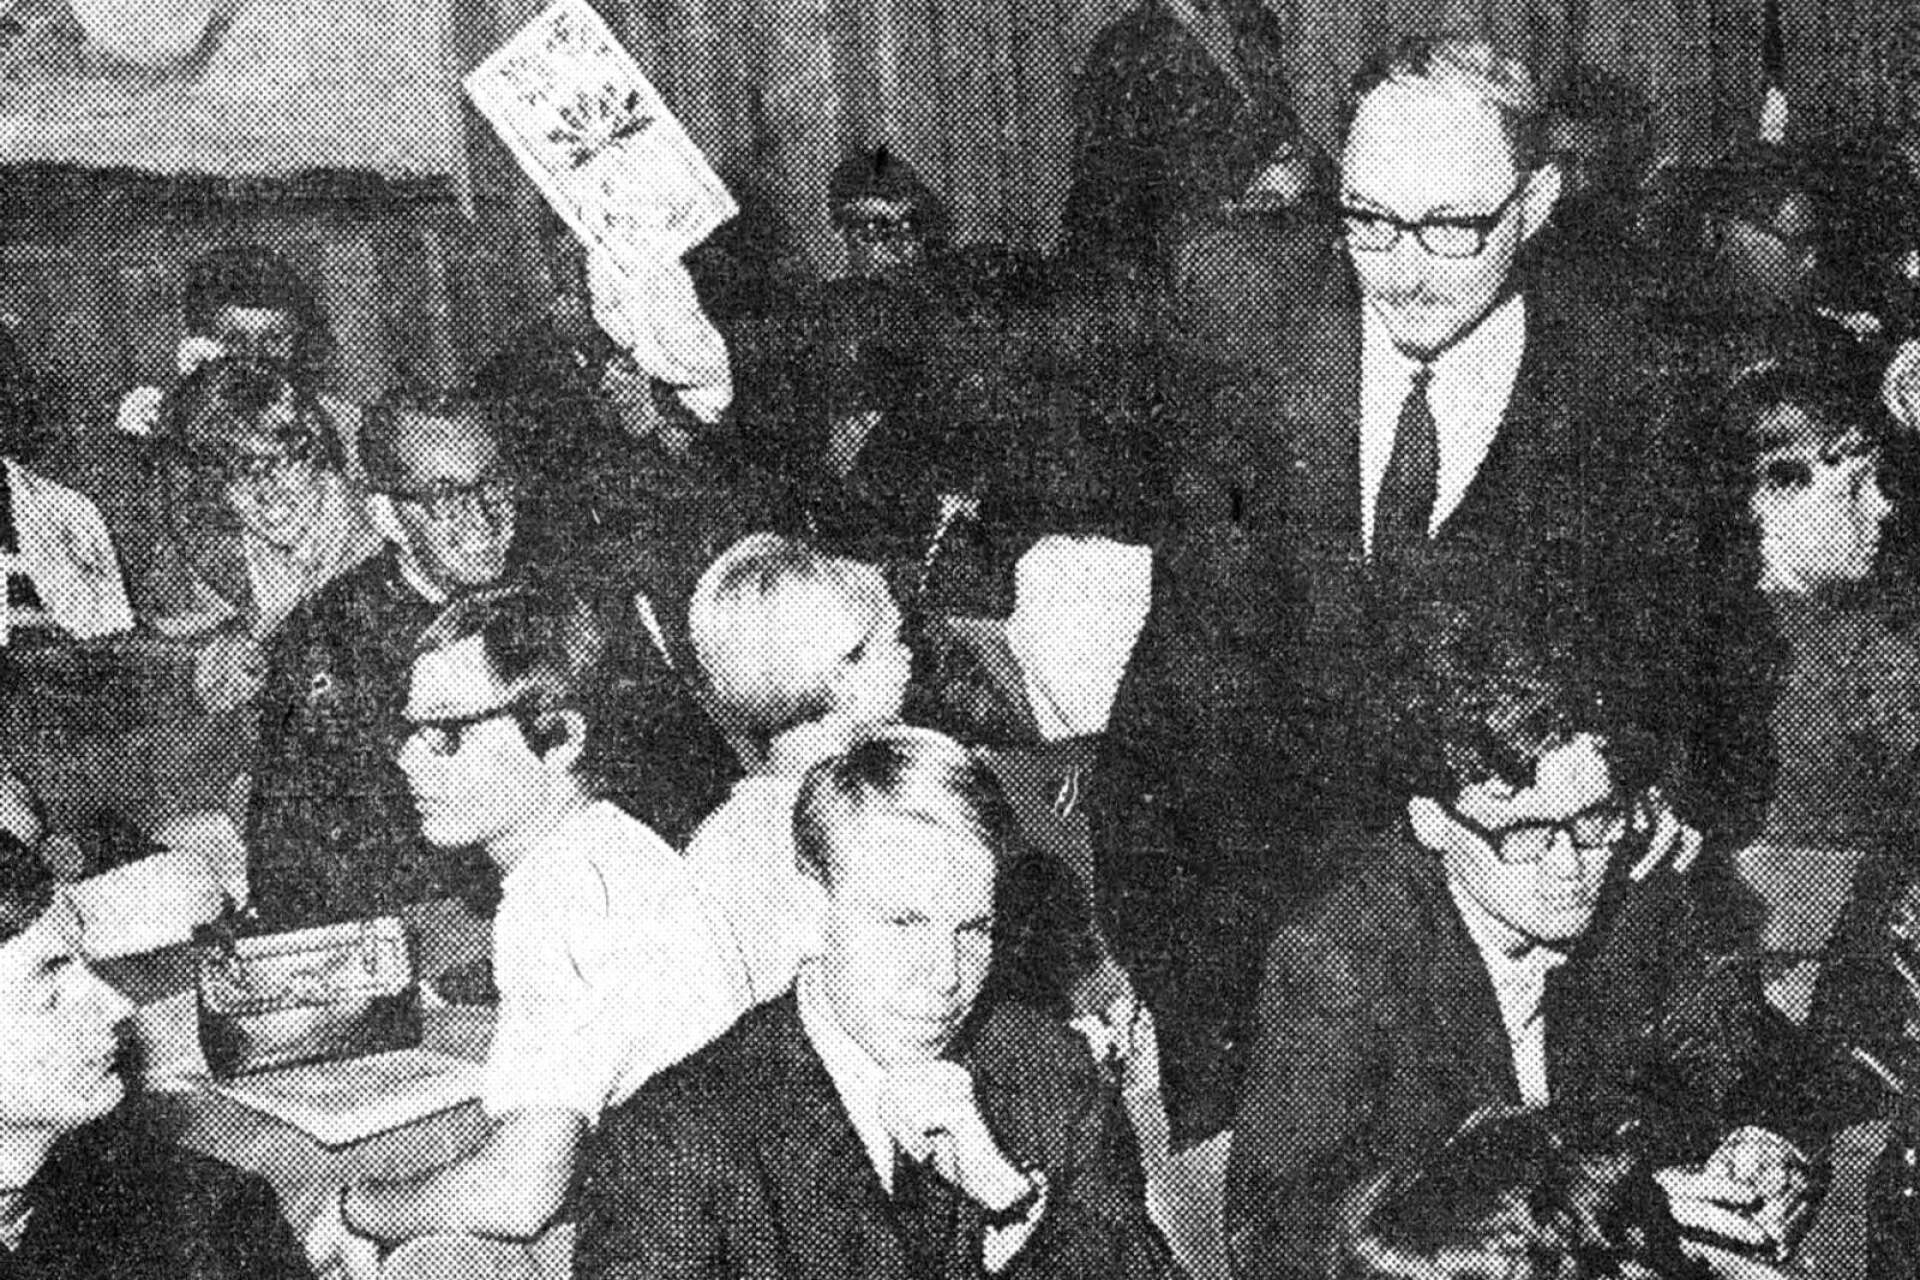 NWT-bild från studentkårens information om universitetsfilialen i september 1967. Ordf. Kjell Fredriksson informerar medan denna krönikas författare sticker fram till vänster i bild.